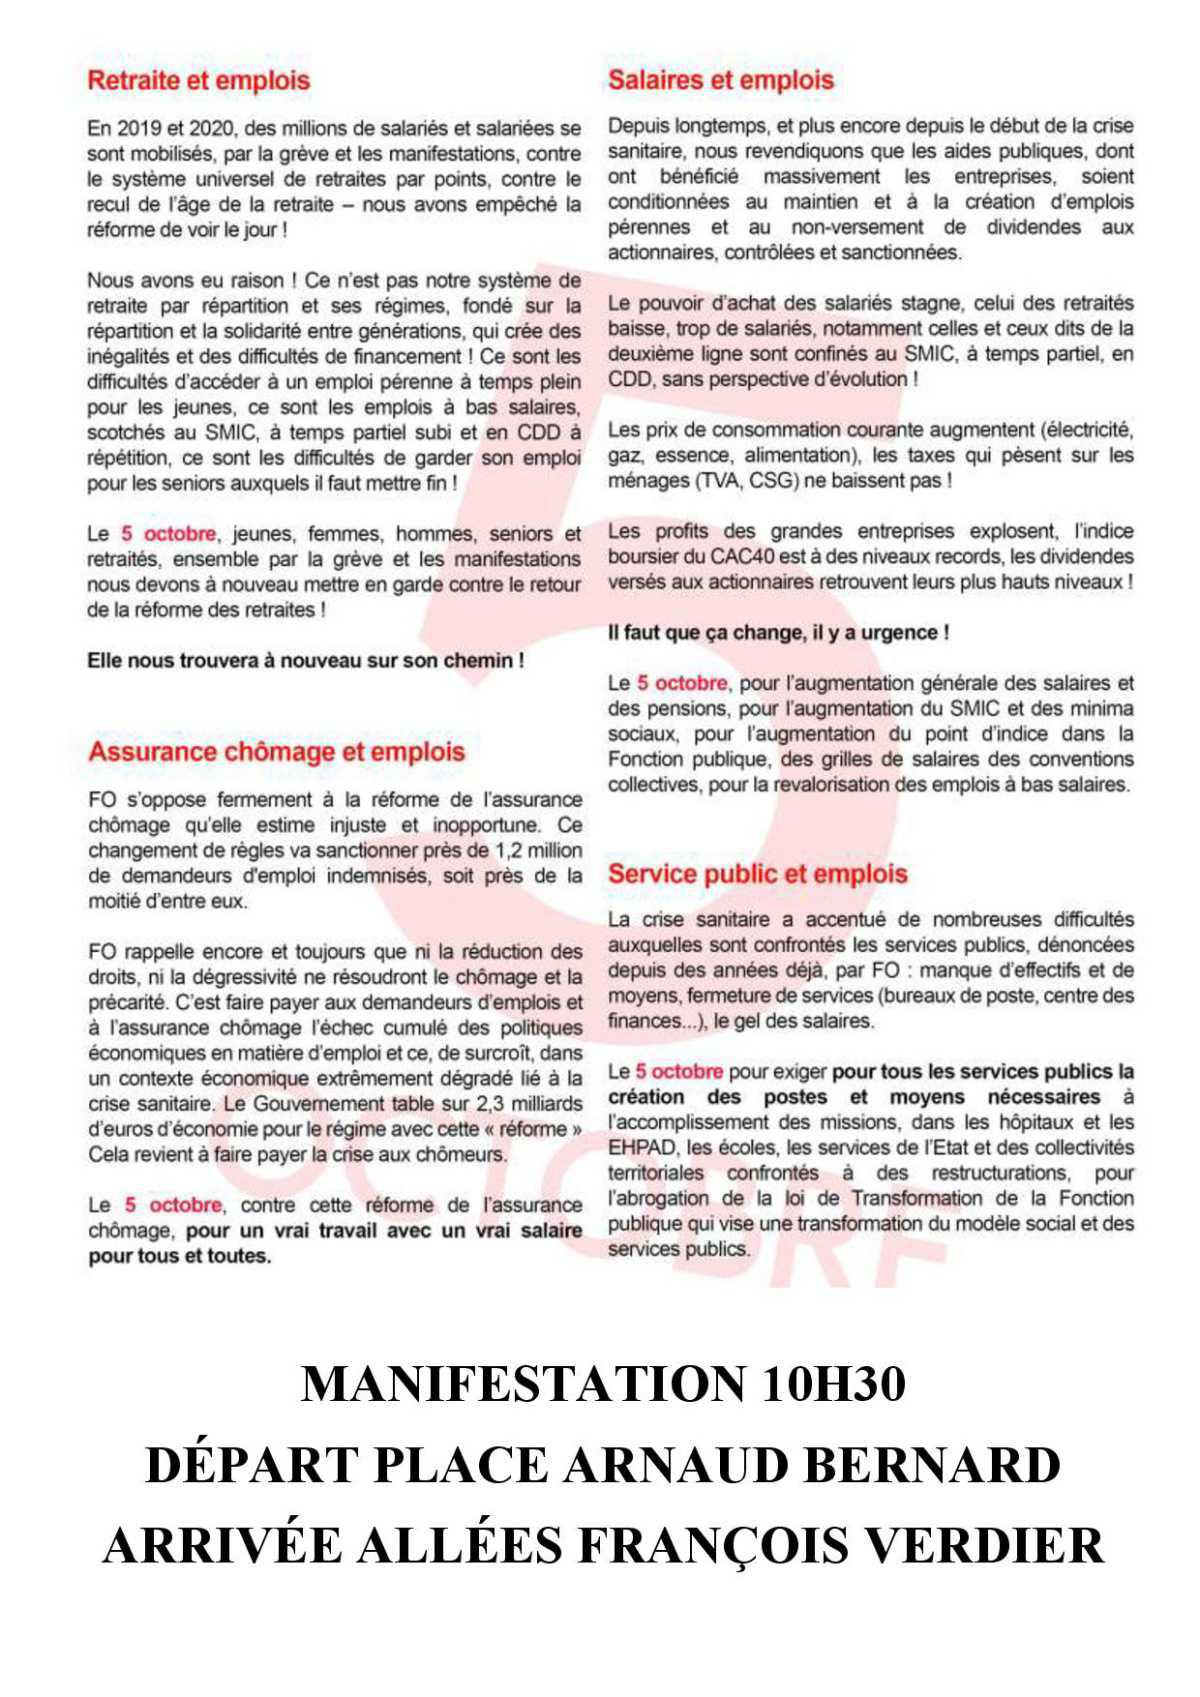 5 octobre, manifestation à Toulouse, départ 10H30 place Arnaud Bernard